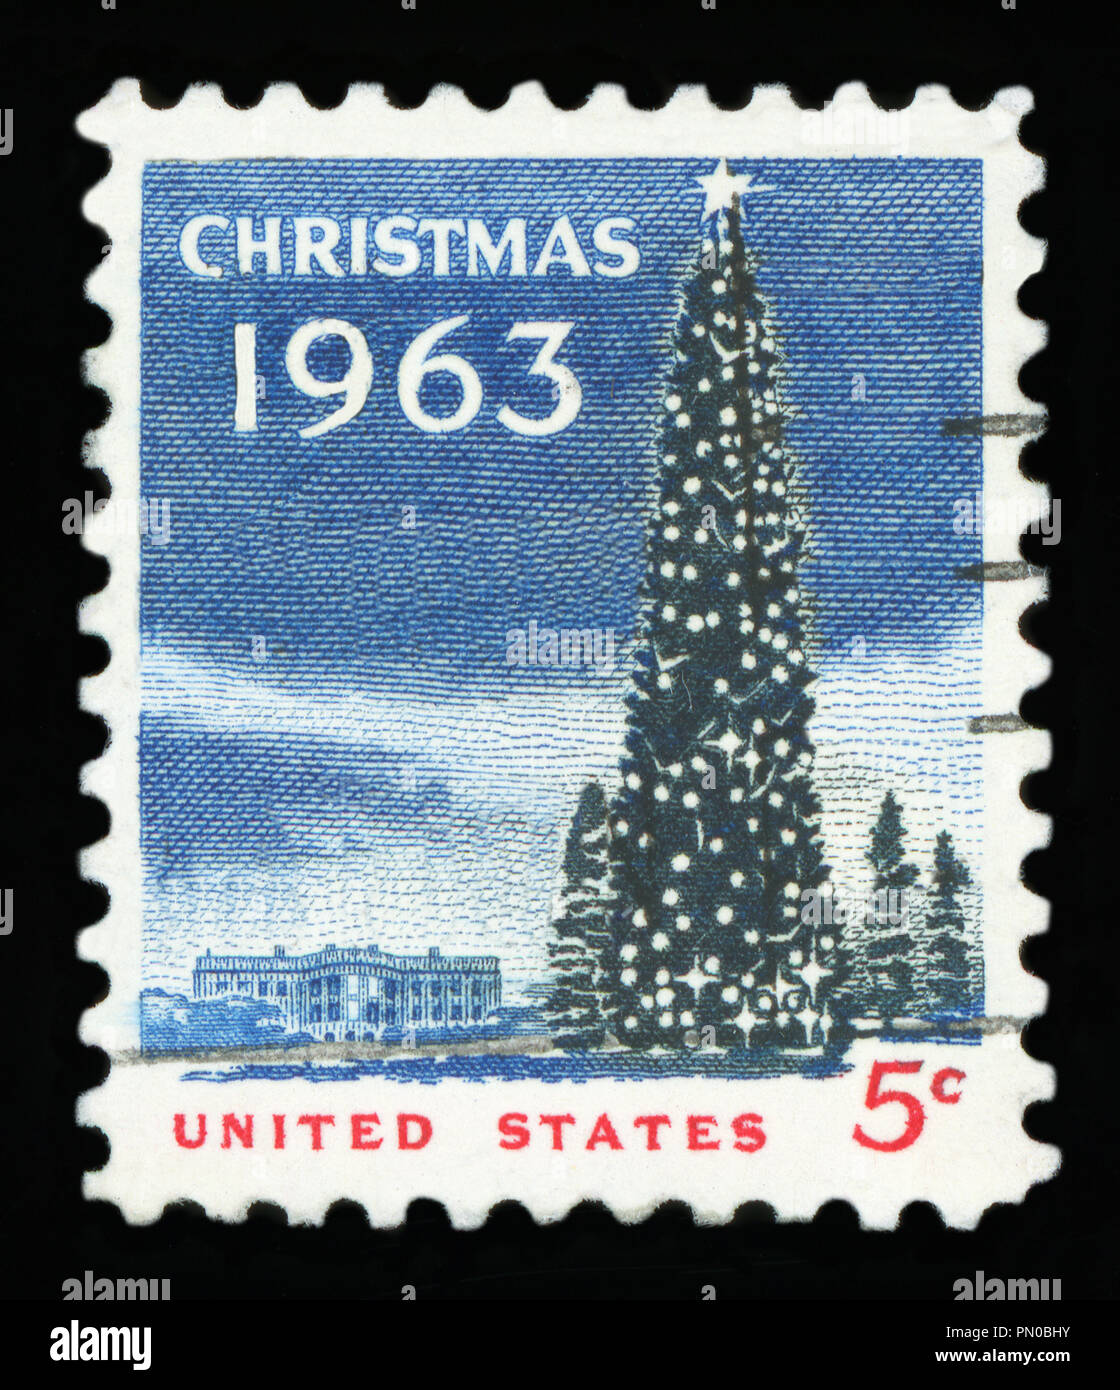 USA - ca. 1963 - uns Weihnachten Briefmarke zeigt das Weiße Haus und die National Christmas Tree in Washington DC., ca. 1963. Stockfoto